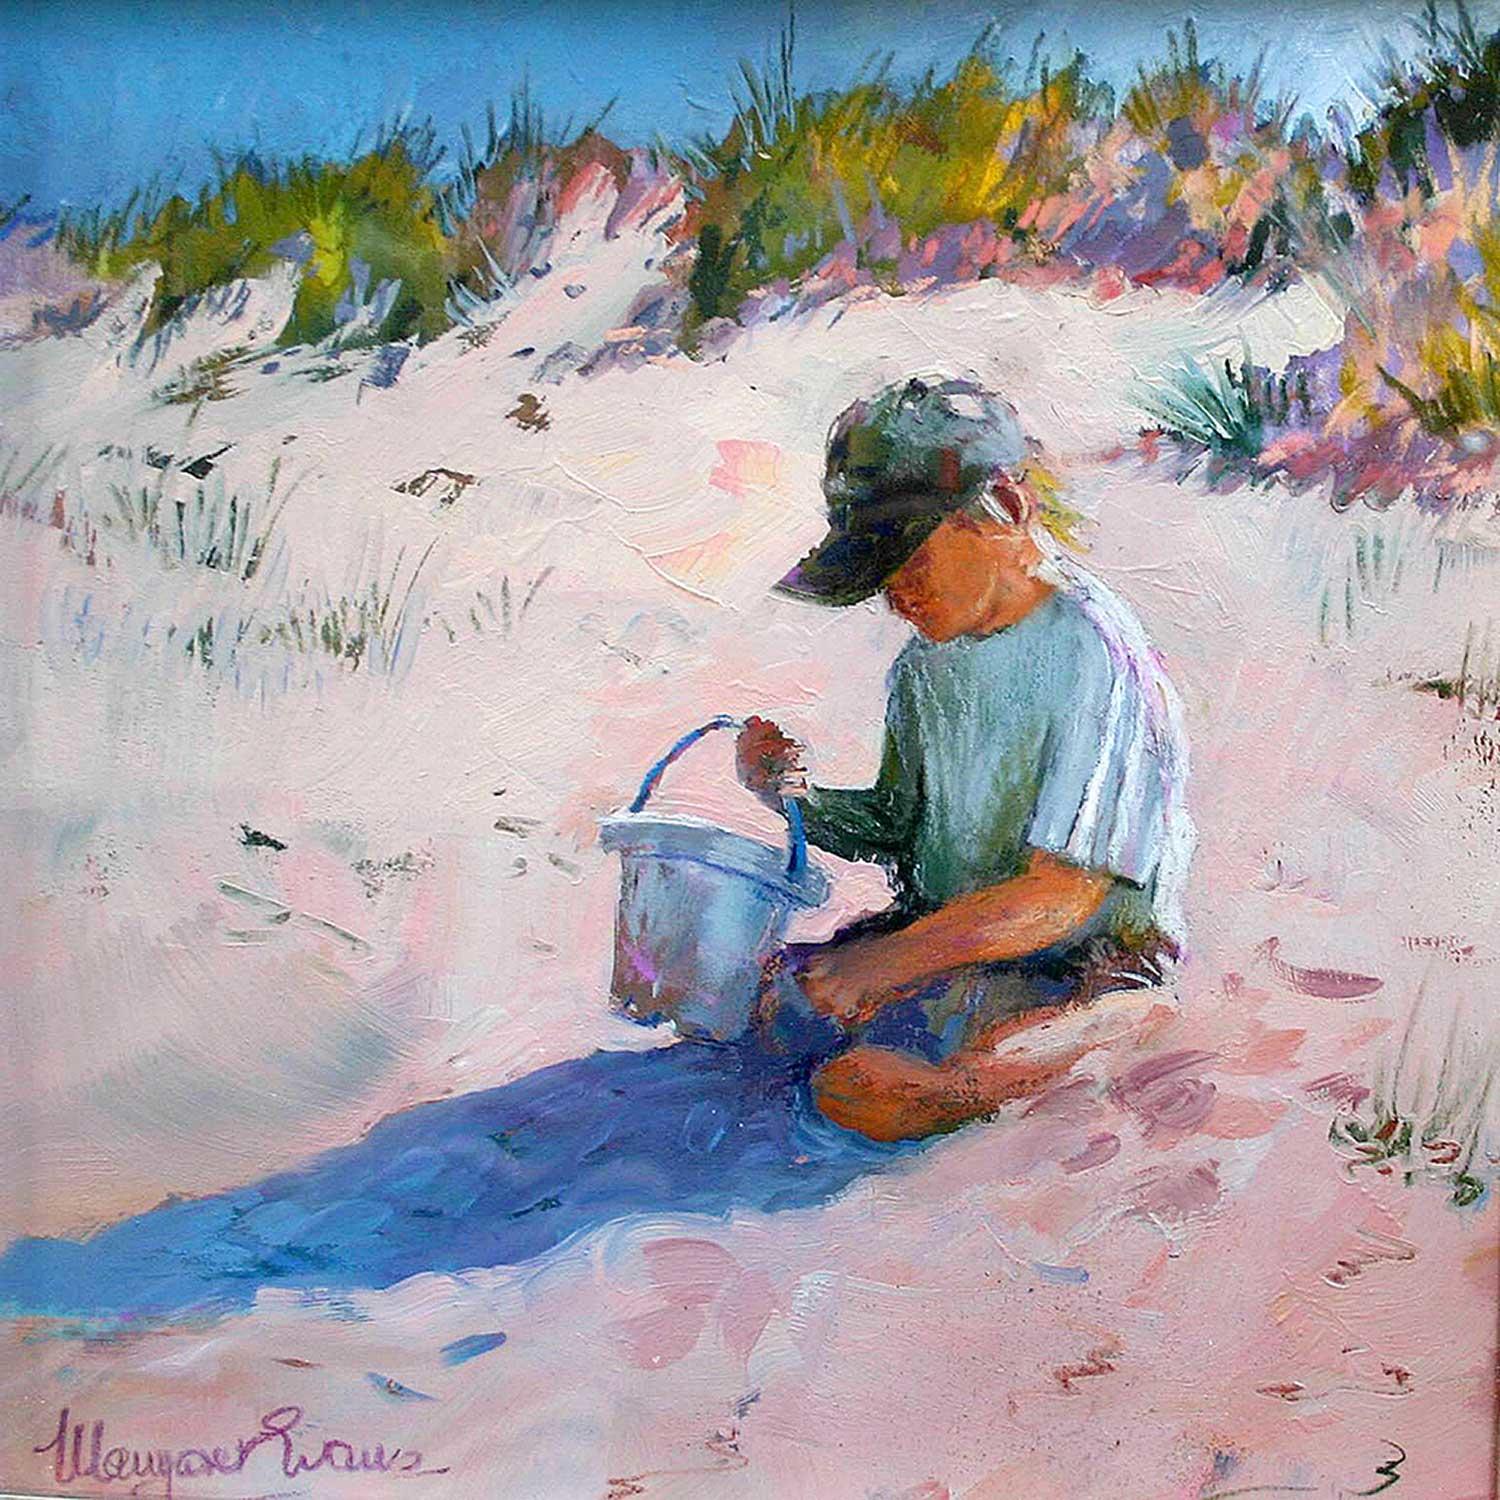 Sand Games by Margaret Evans